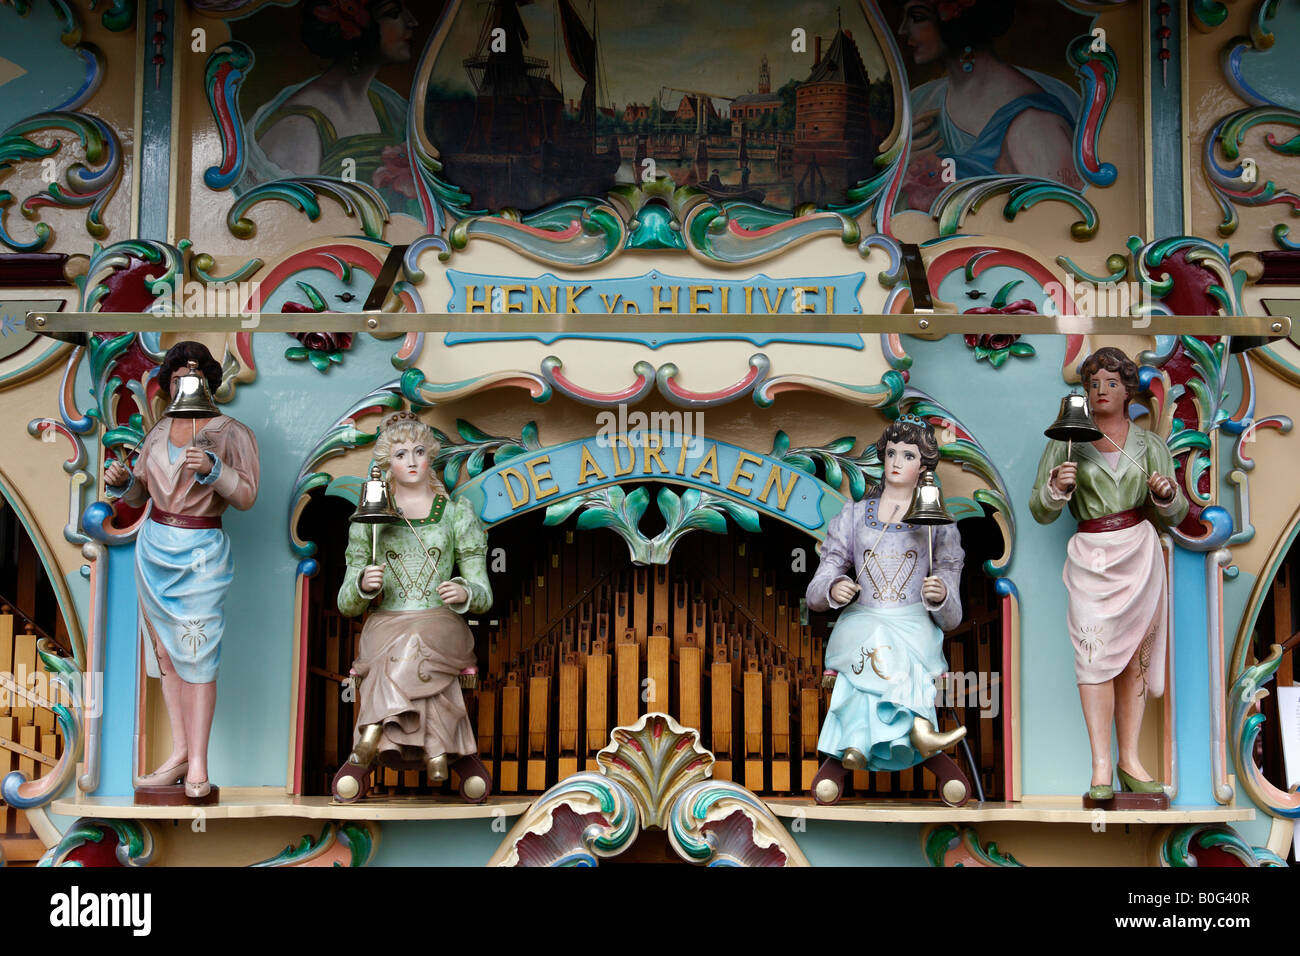 Détail d'un parc d'orgue à keukenhof lisse Pays-Bas Hollande du Nord Europe Banque D'Images